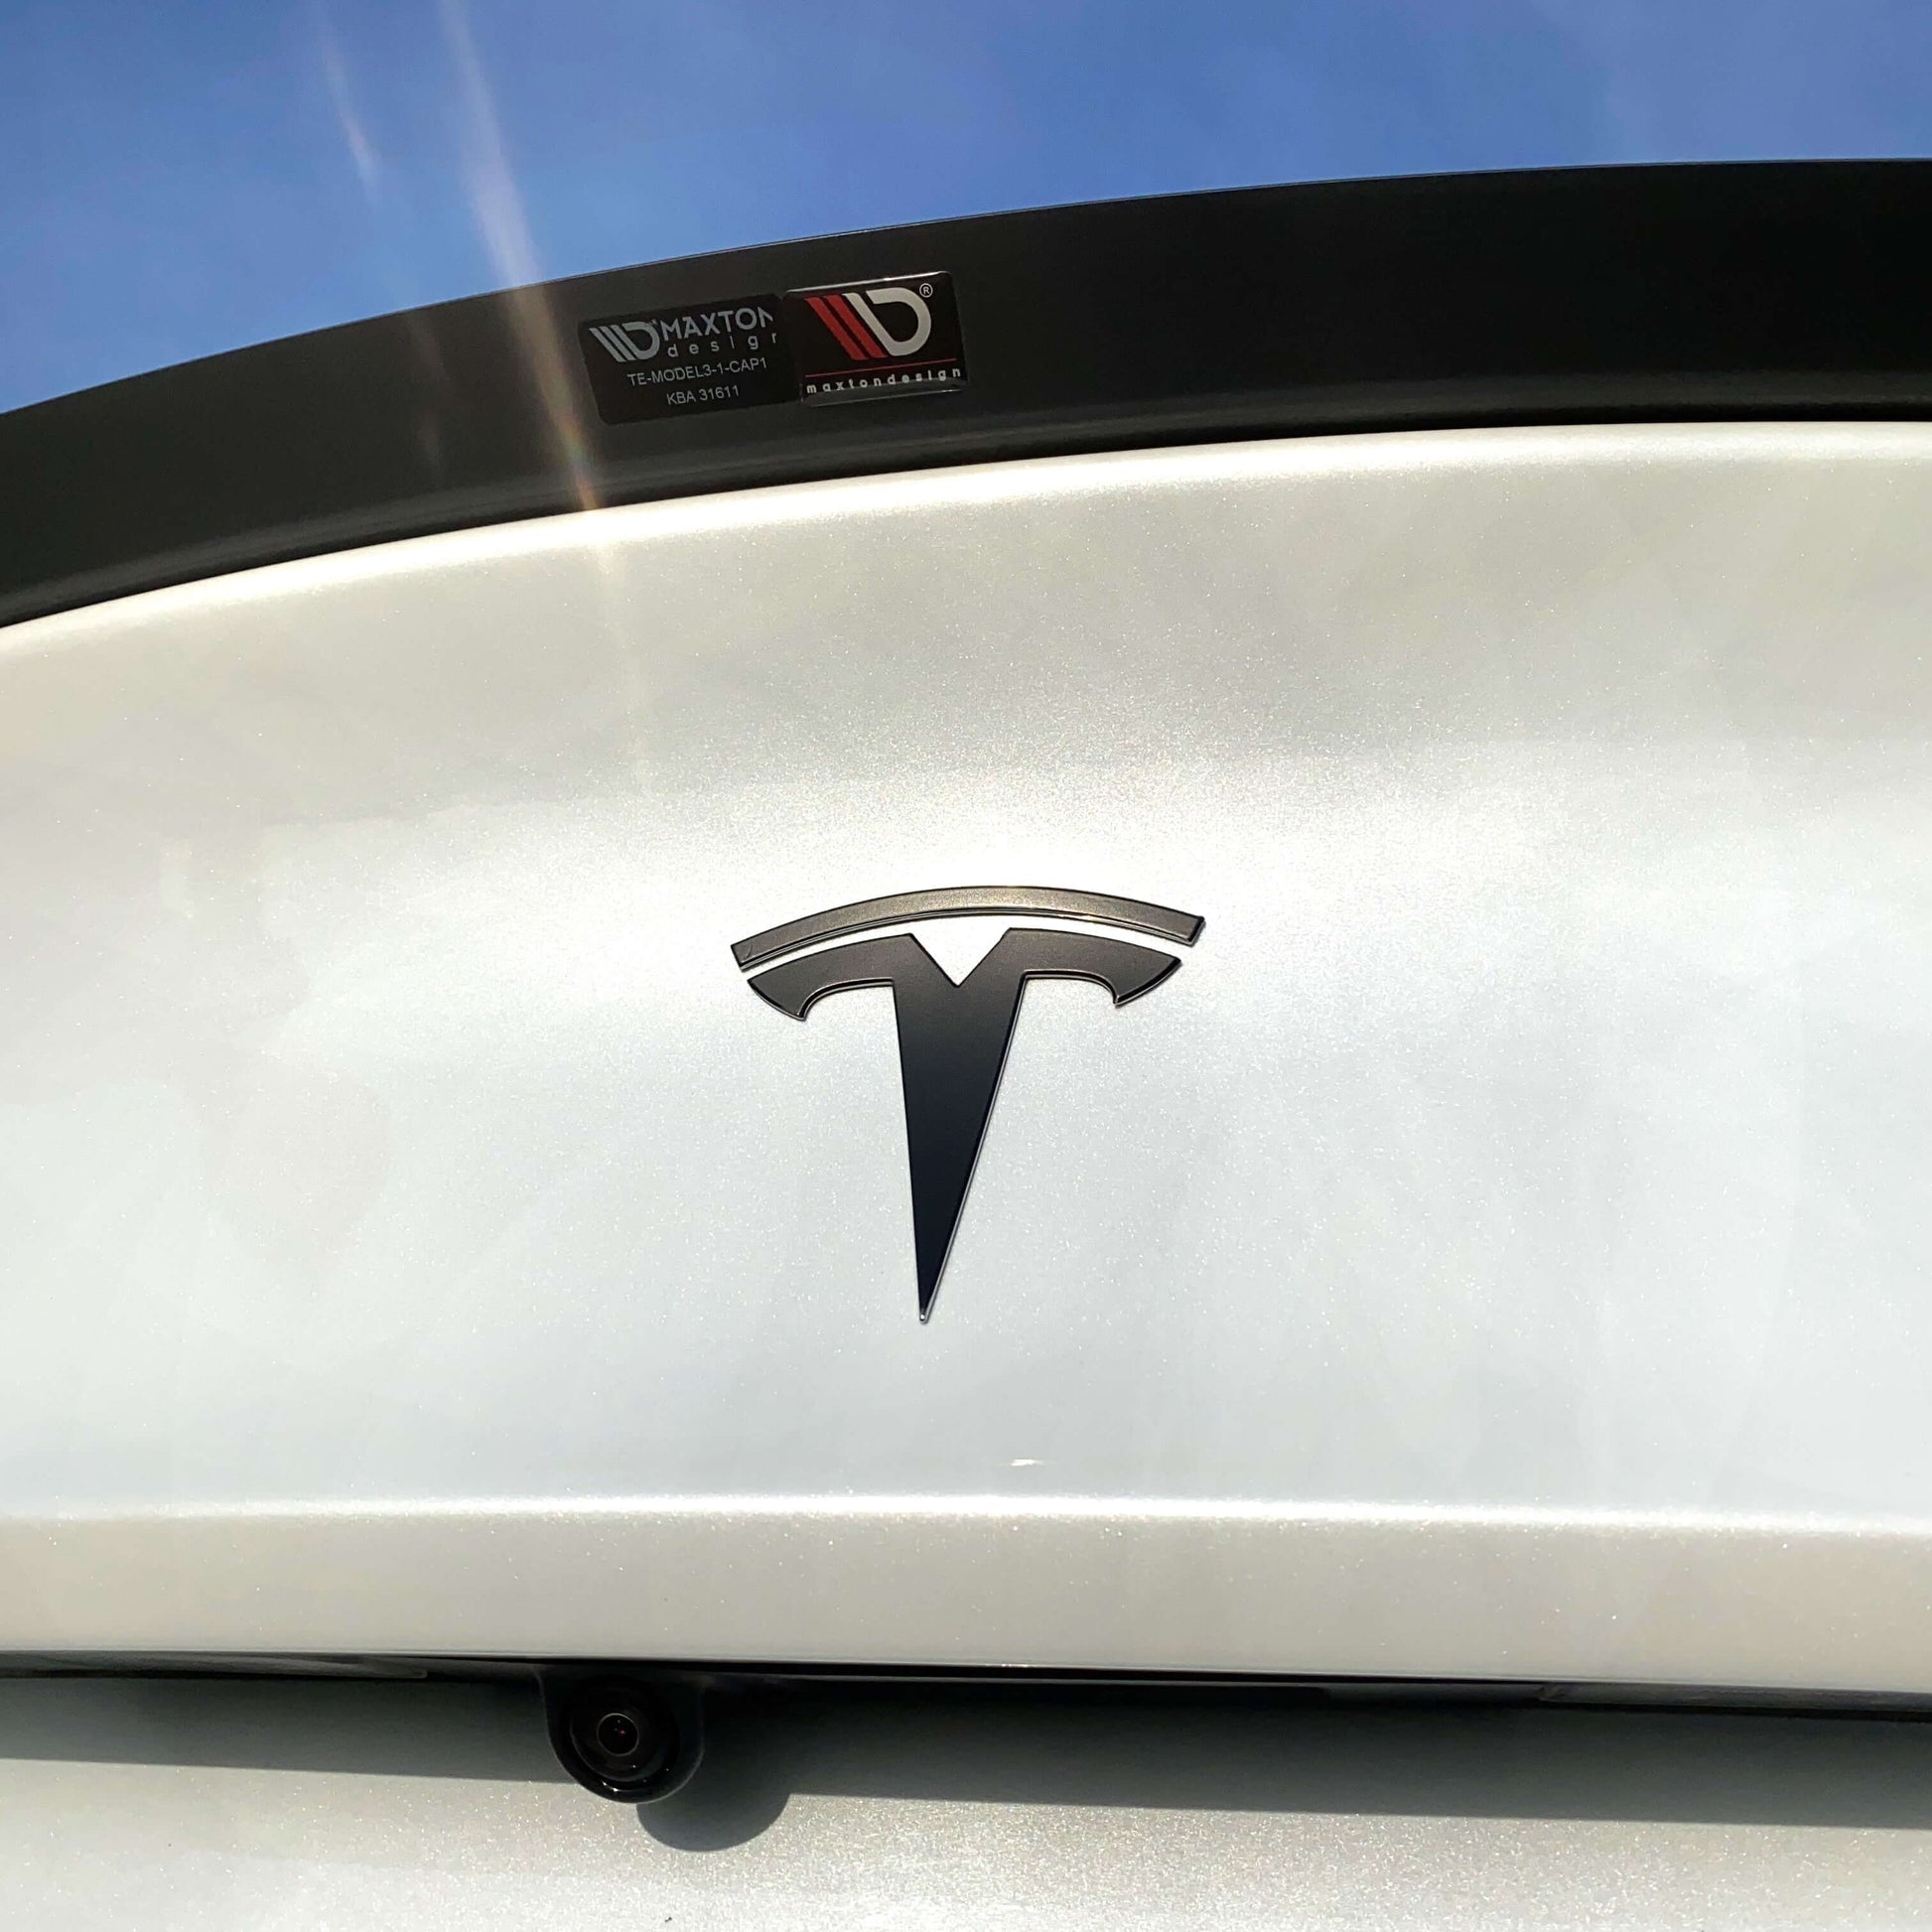 Aufsatz für den Wagenheber - Tesla Model 3&Y